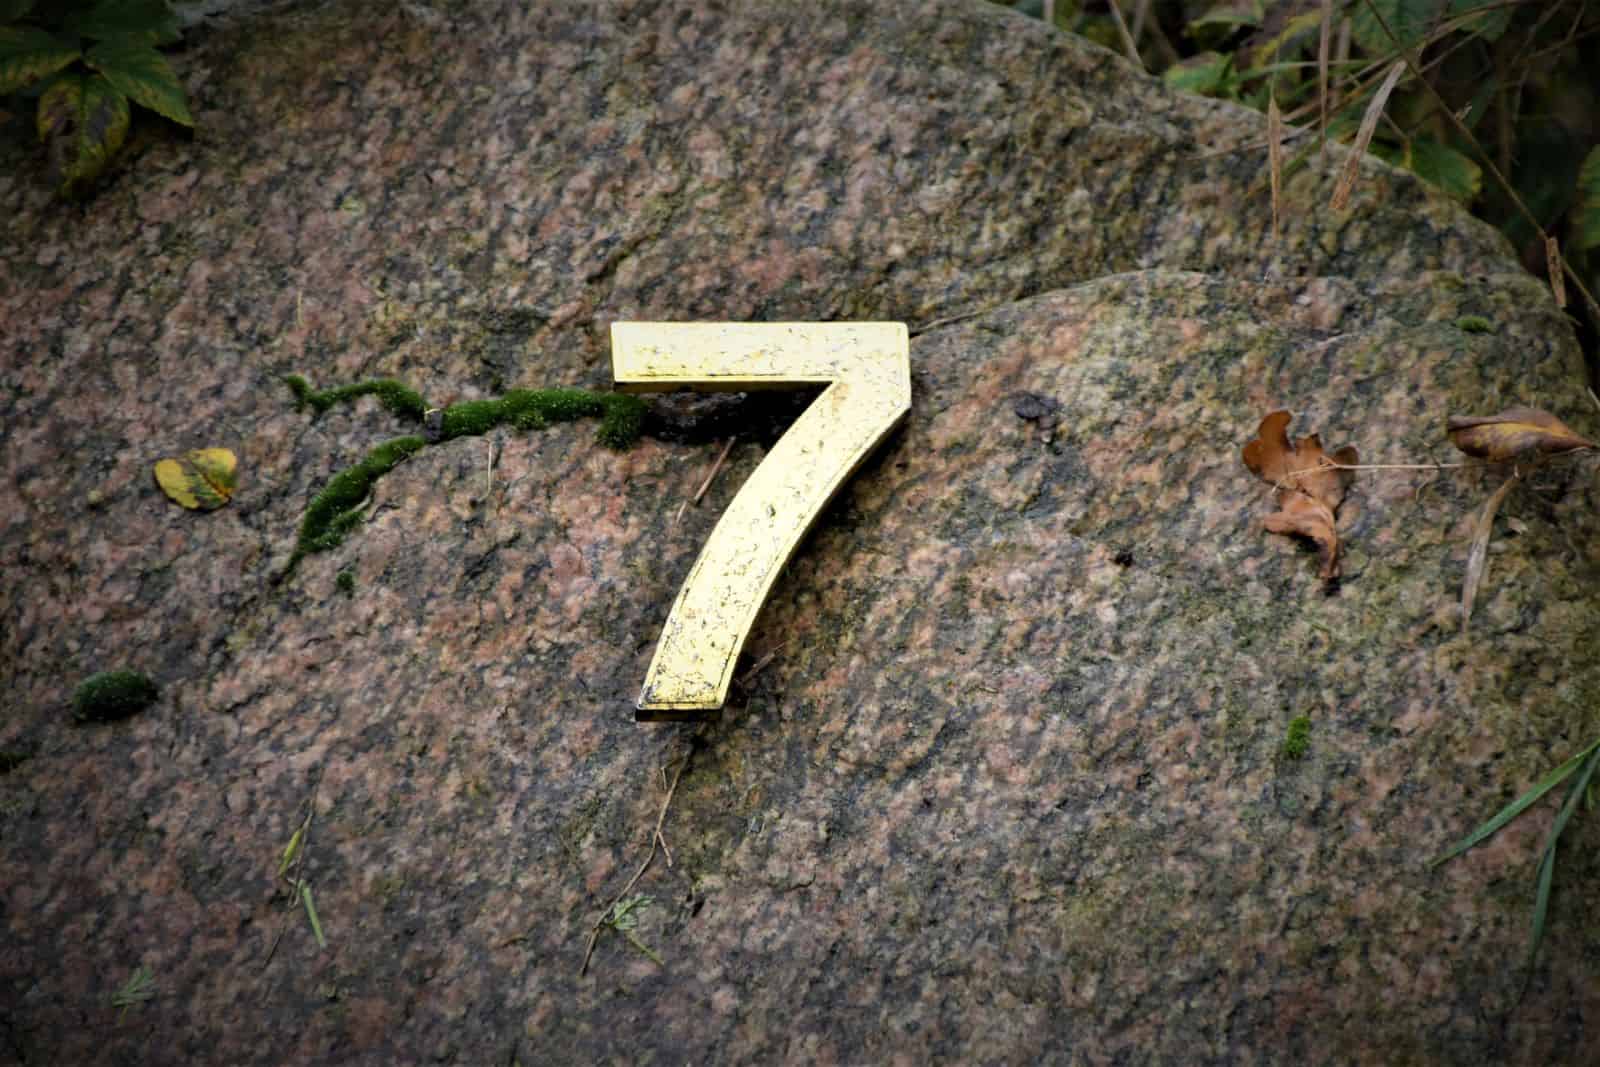 Zahl 7